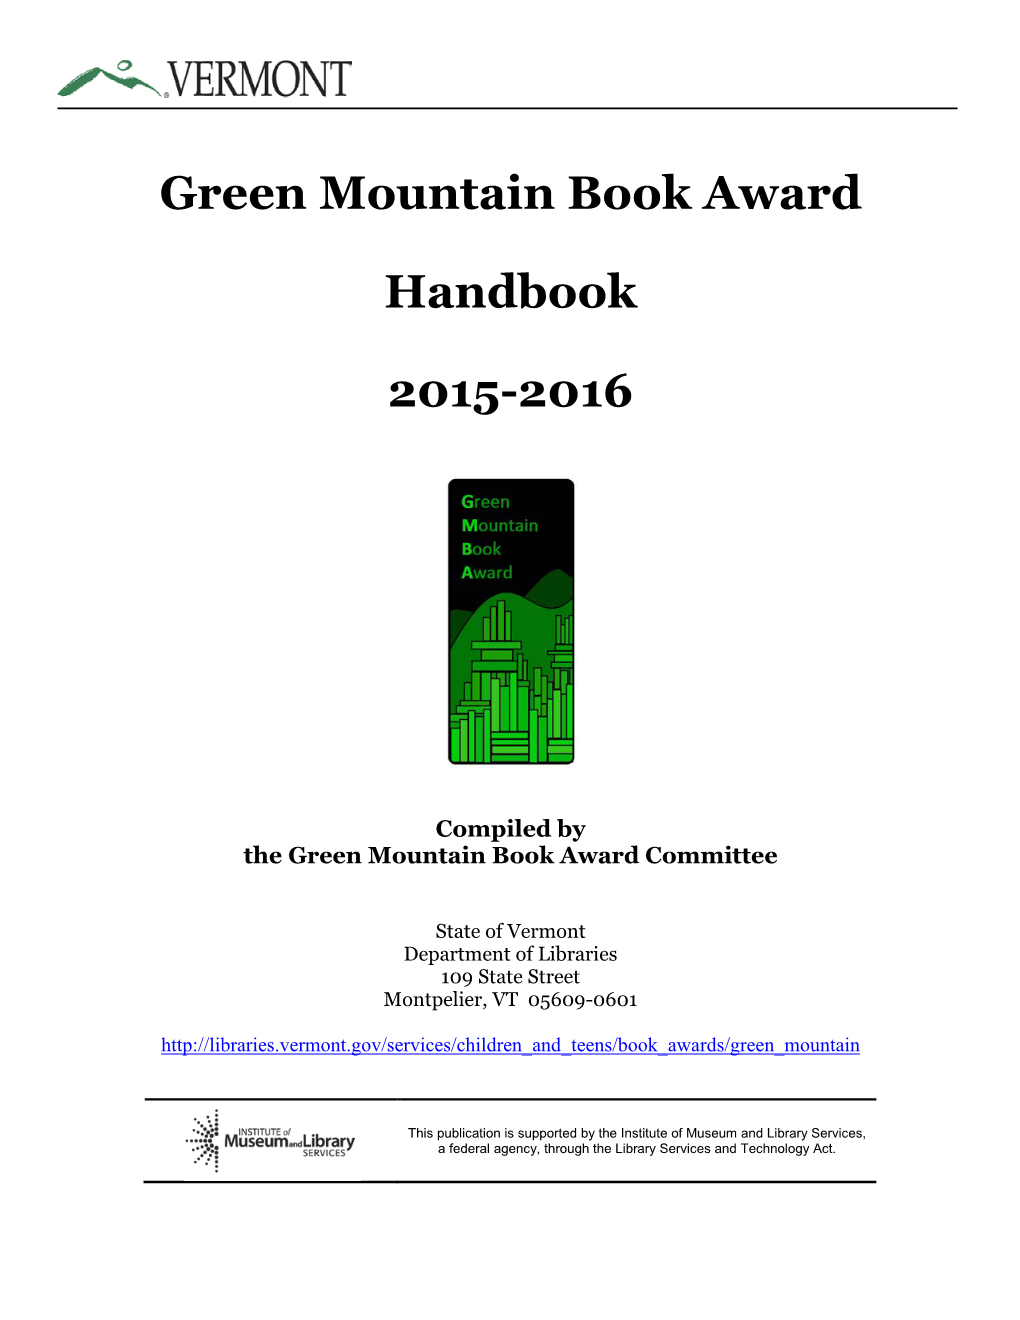 Green Mountain Book Award Handbook 2015-2016